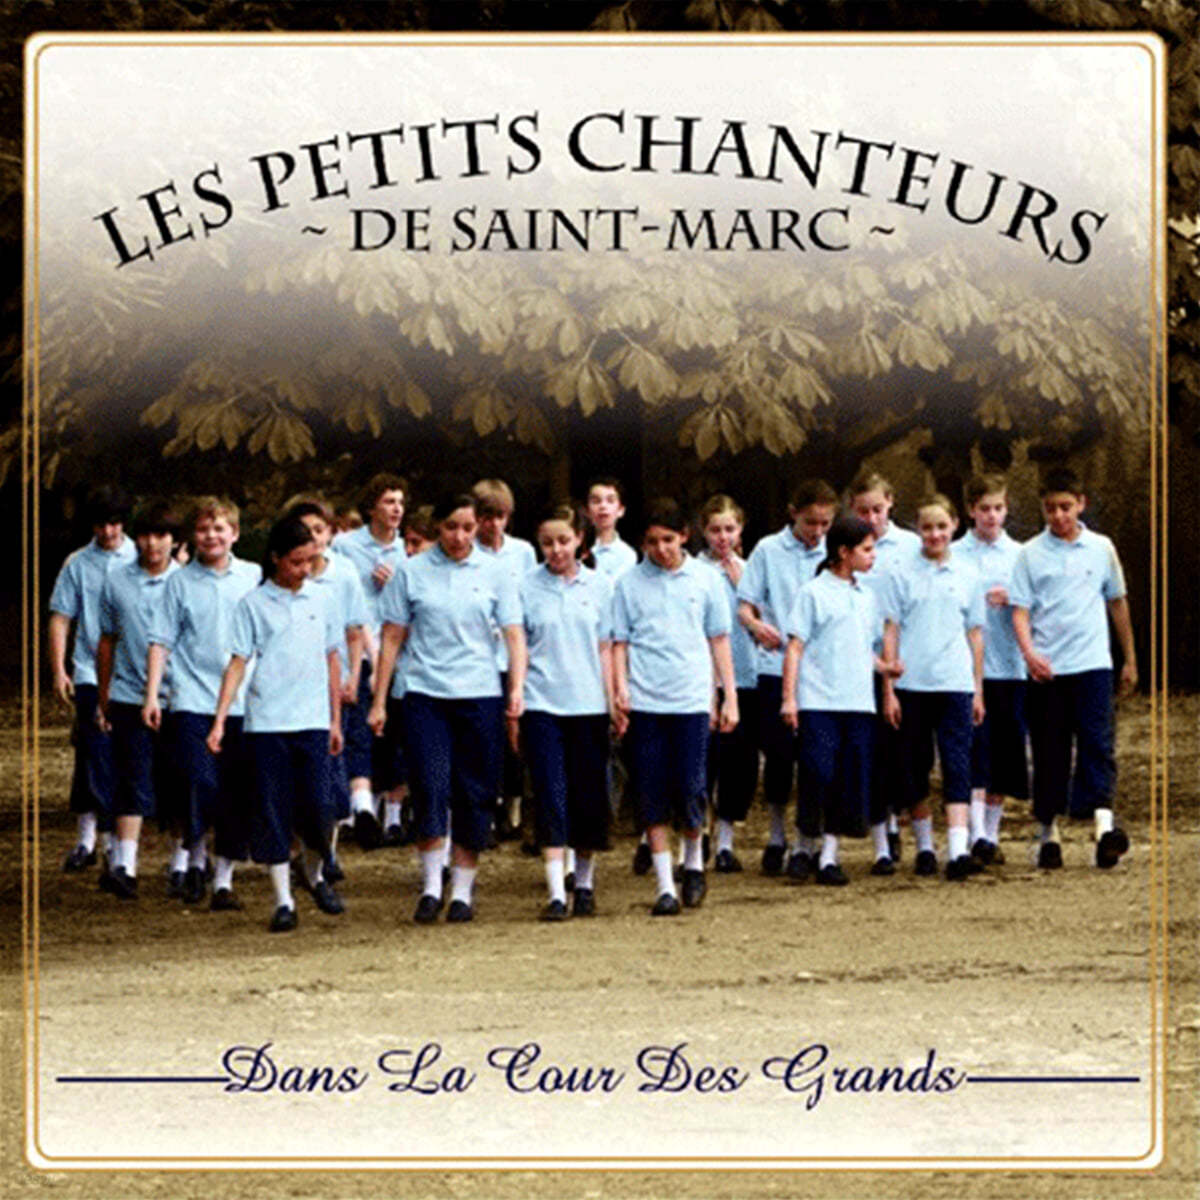 Les Petits Chanteurs De Saint-Marc 어른의 뜰 안에서 - 생 마르크 합창단 (Dans La Cour Des Grands) 